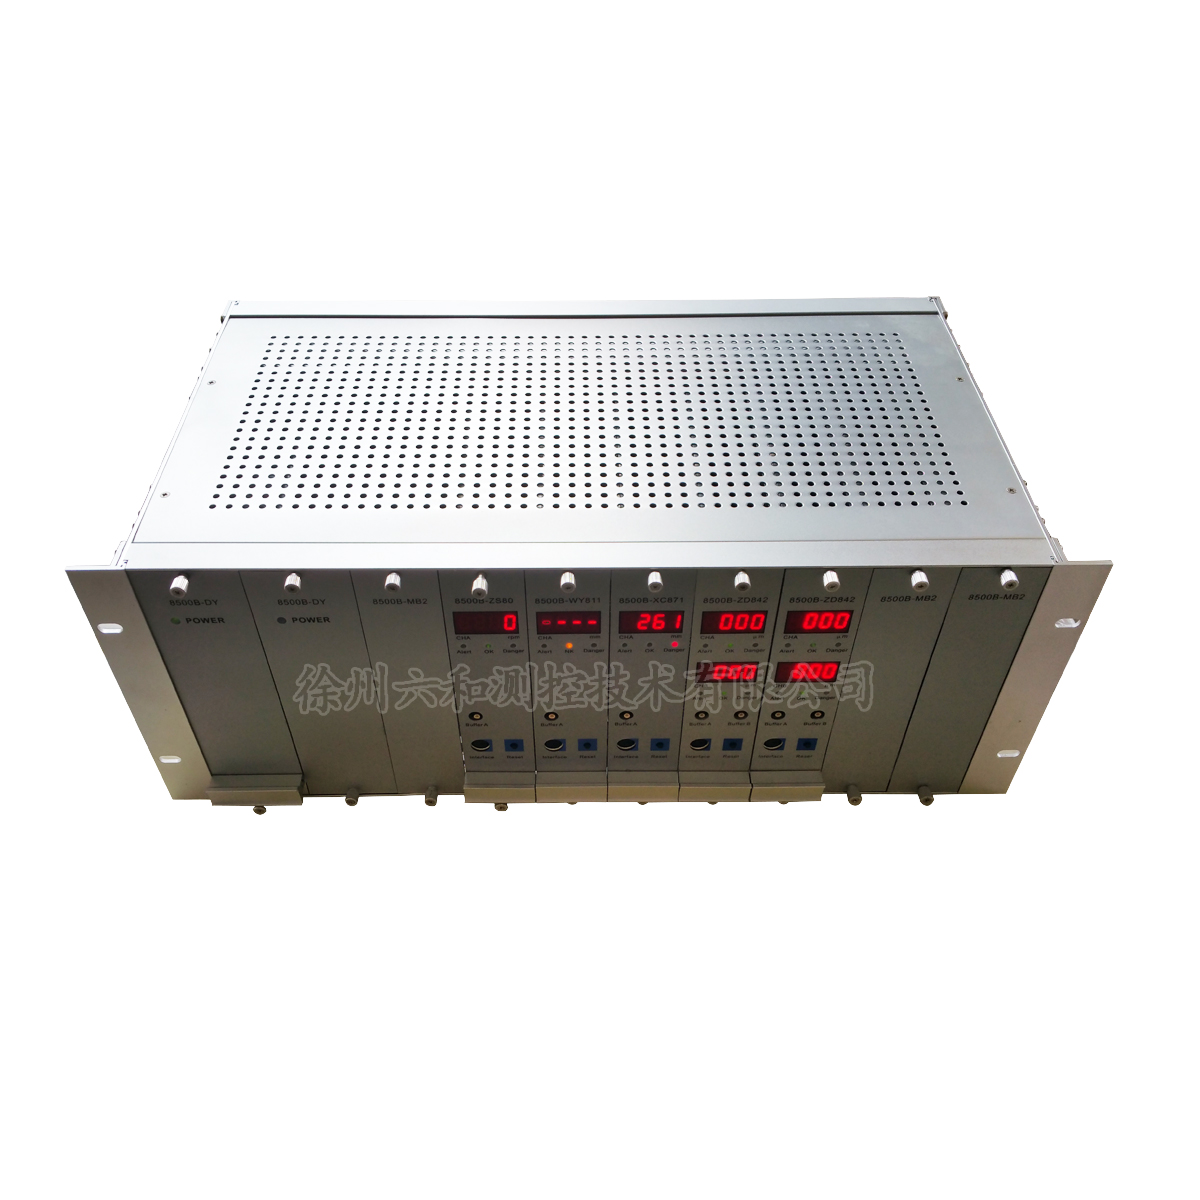 8500B-ZD842振动监控保护模块